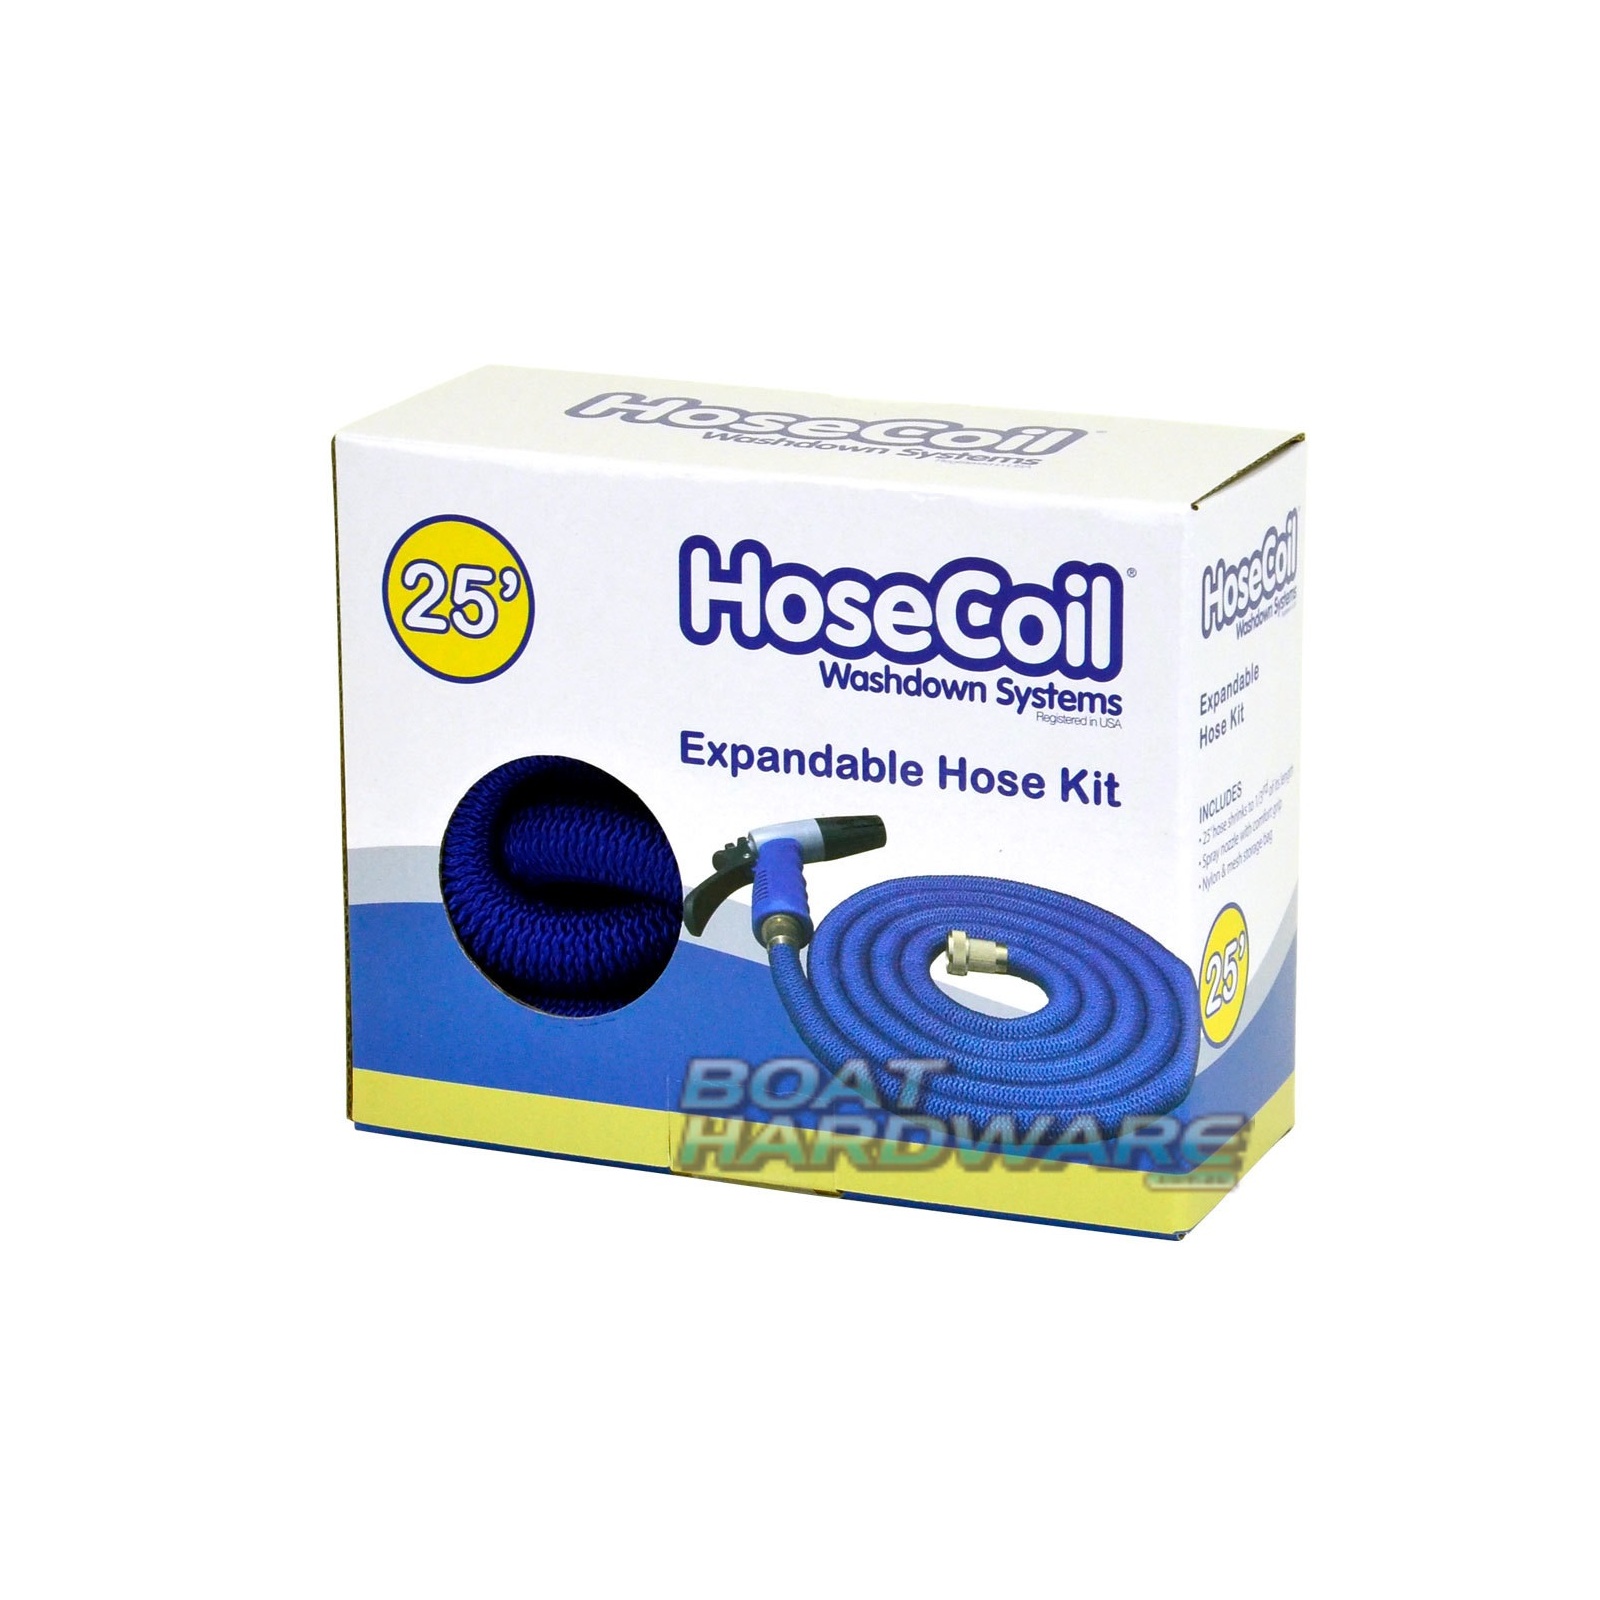 Hose Coil Expandable hose kit 25' / 7.5 Metre